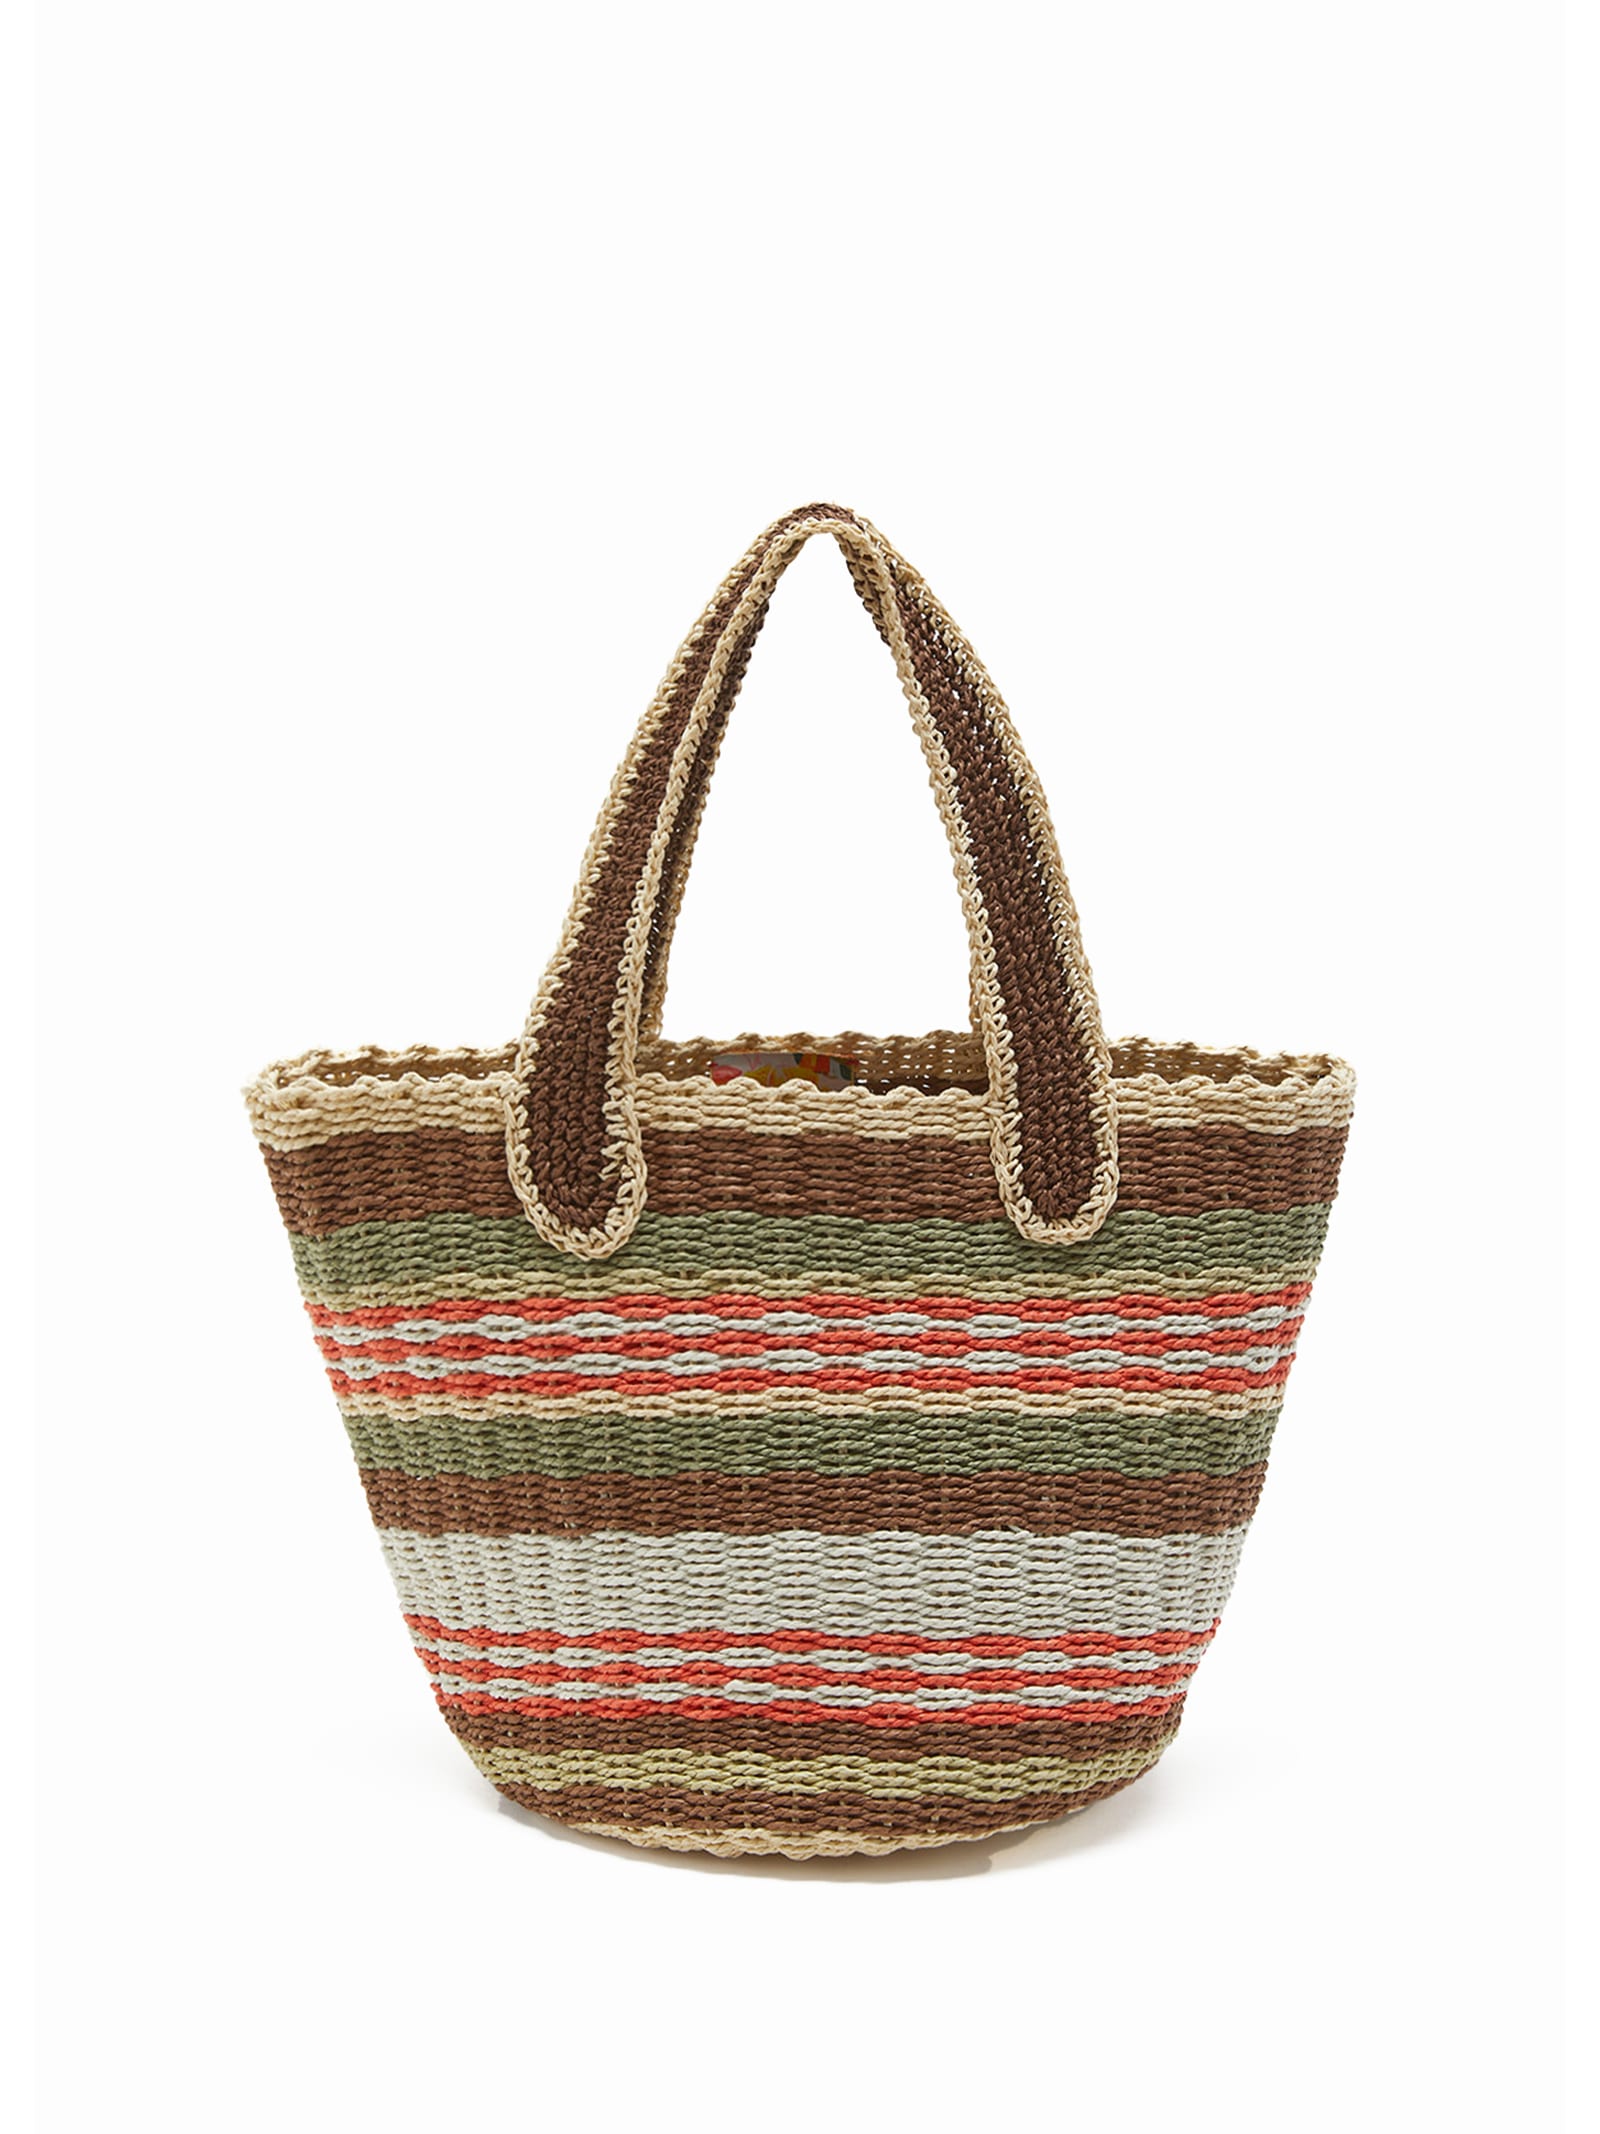 Shopping Bag In Hand-woven Multicolored Raffia